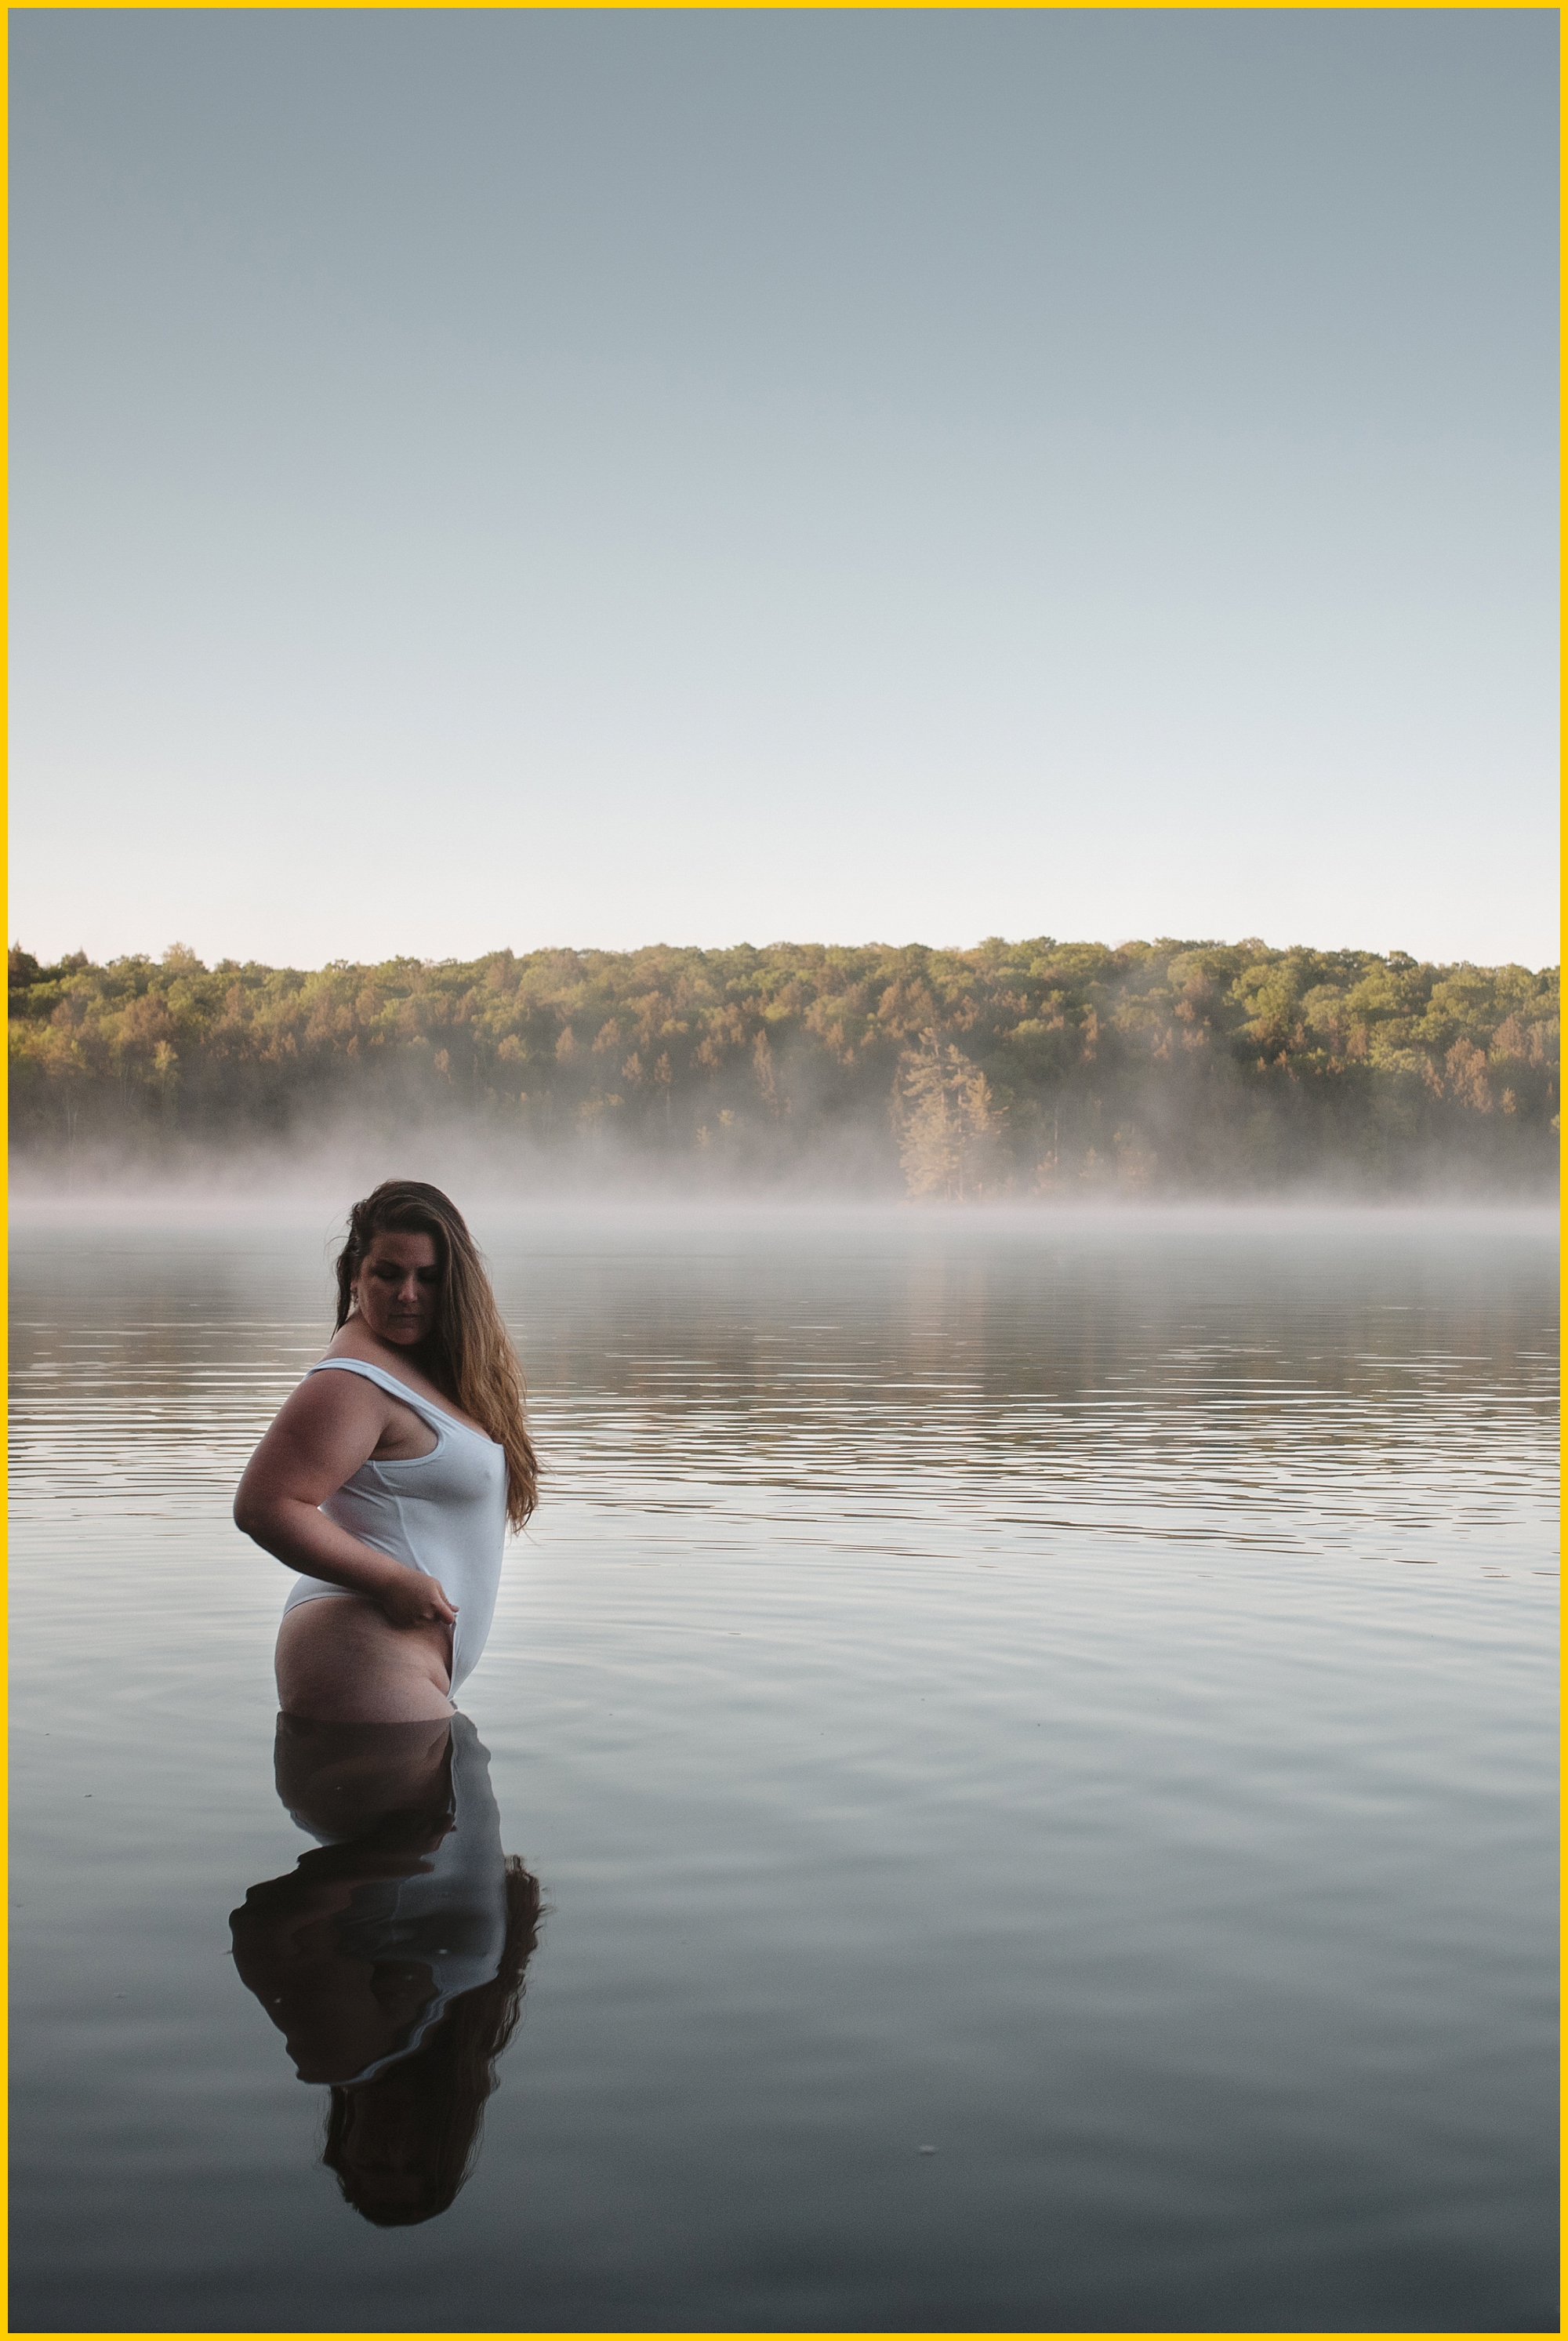 curvy woman posing in a still lake